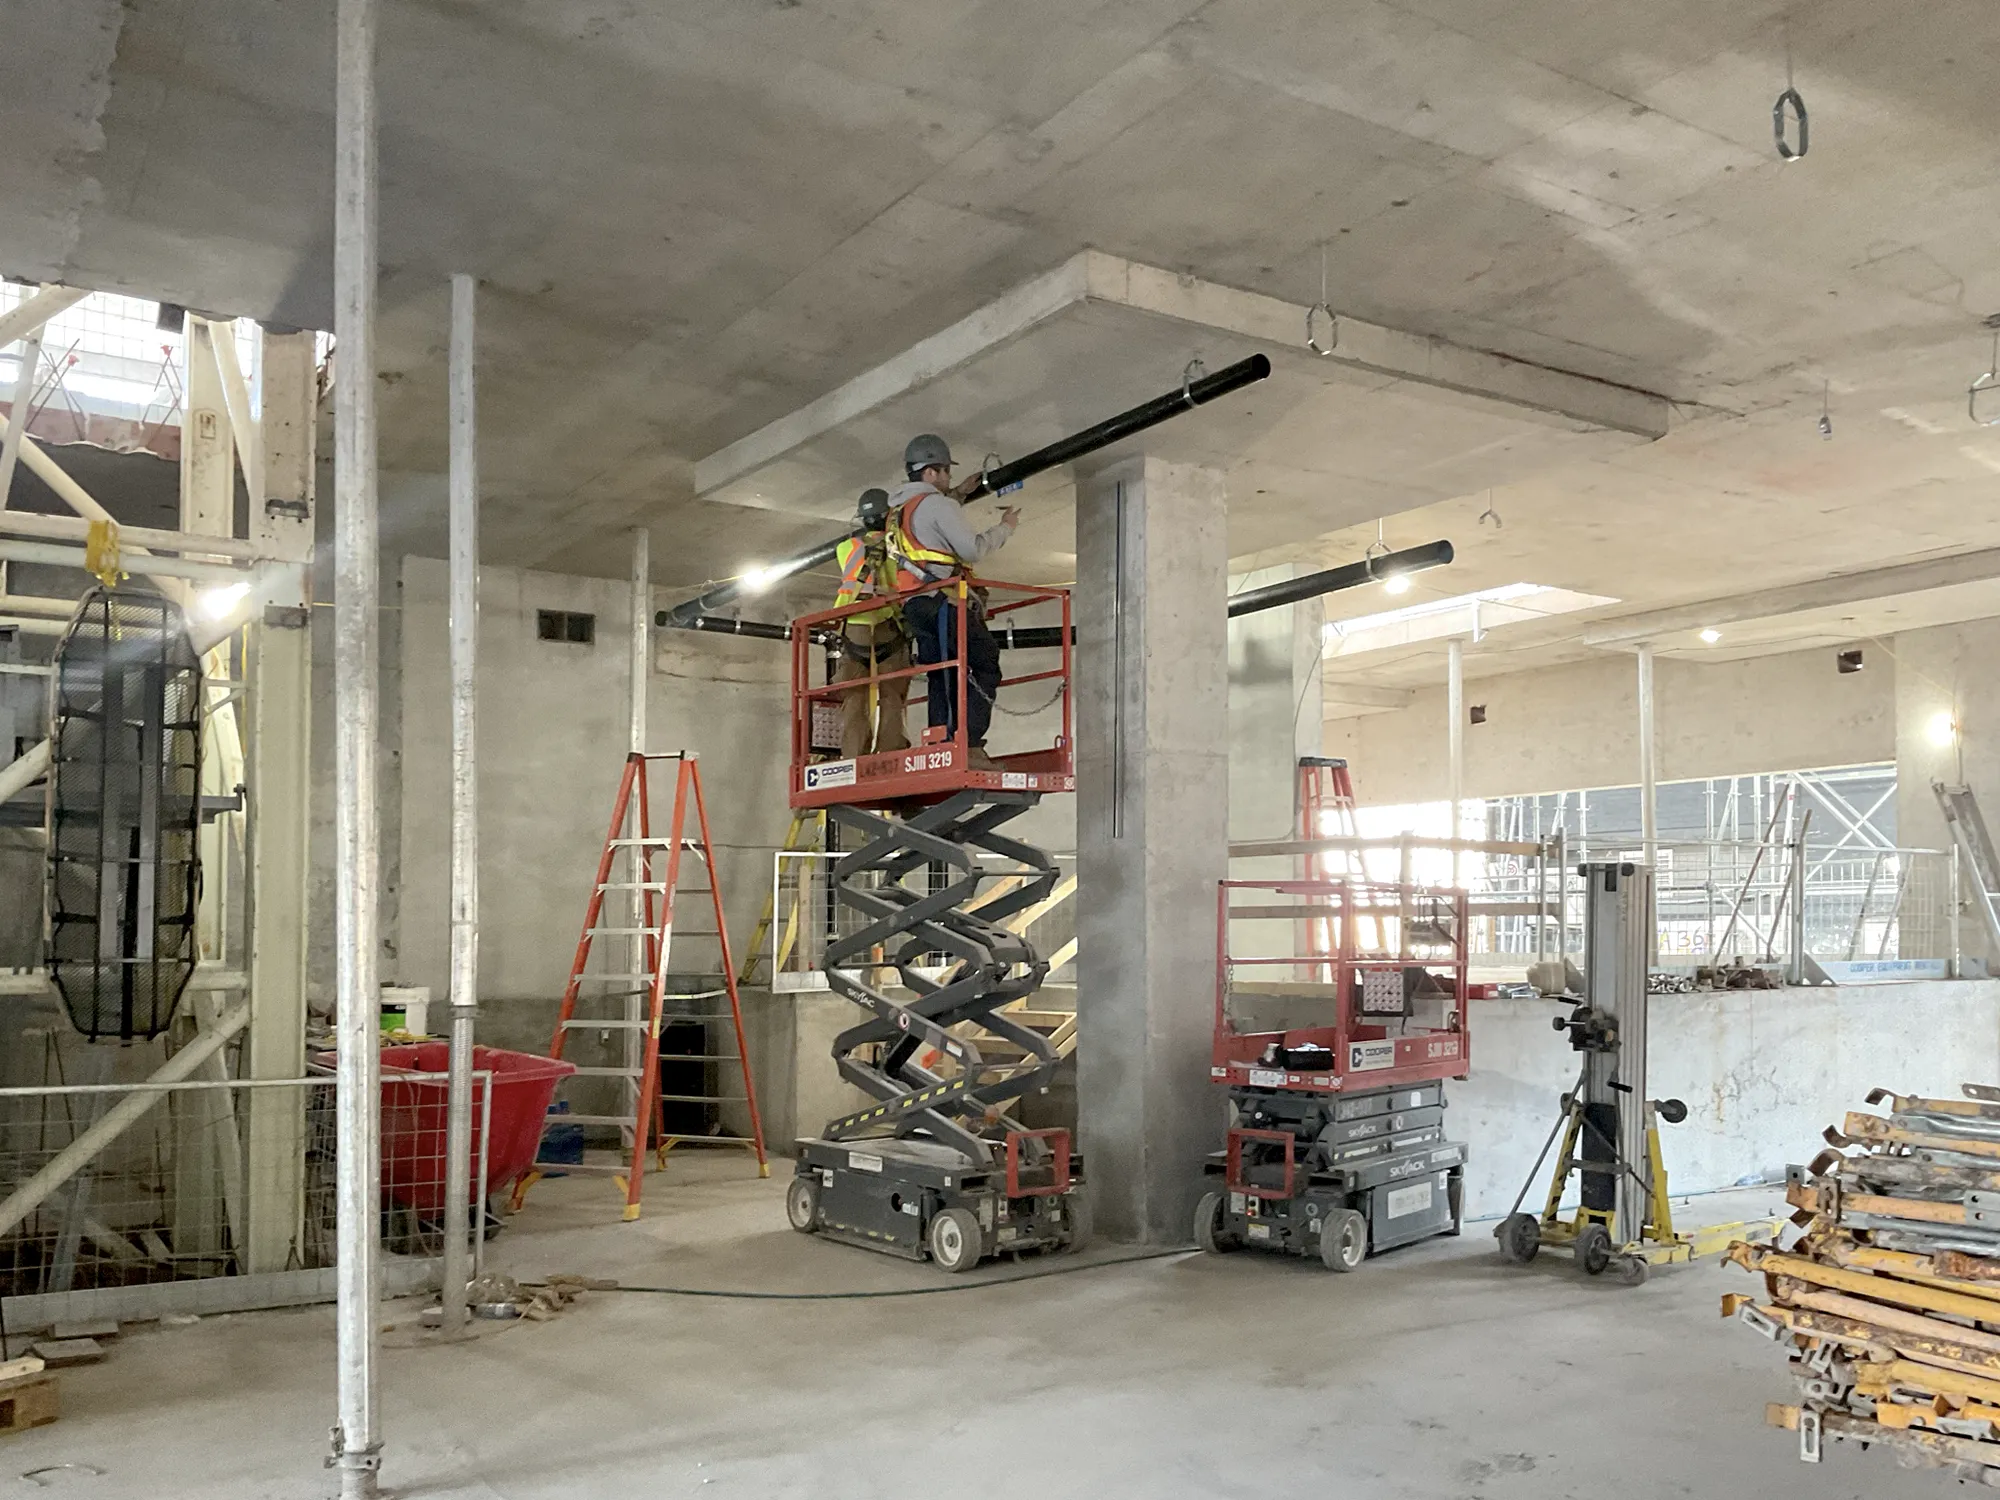 Parliament & Co commercial loft spaces construction update